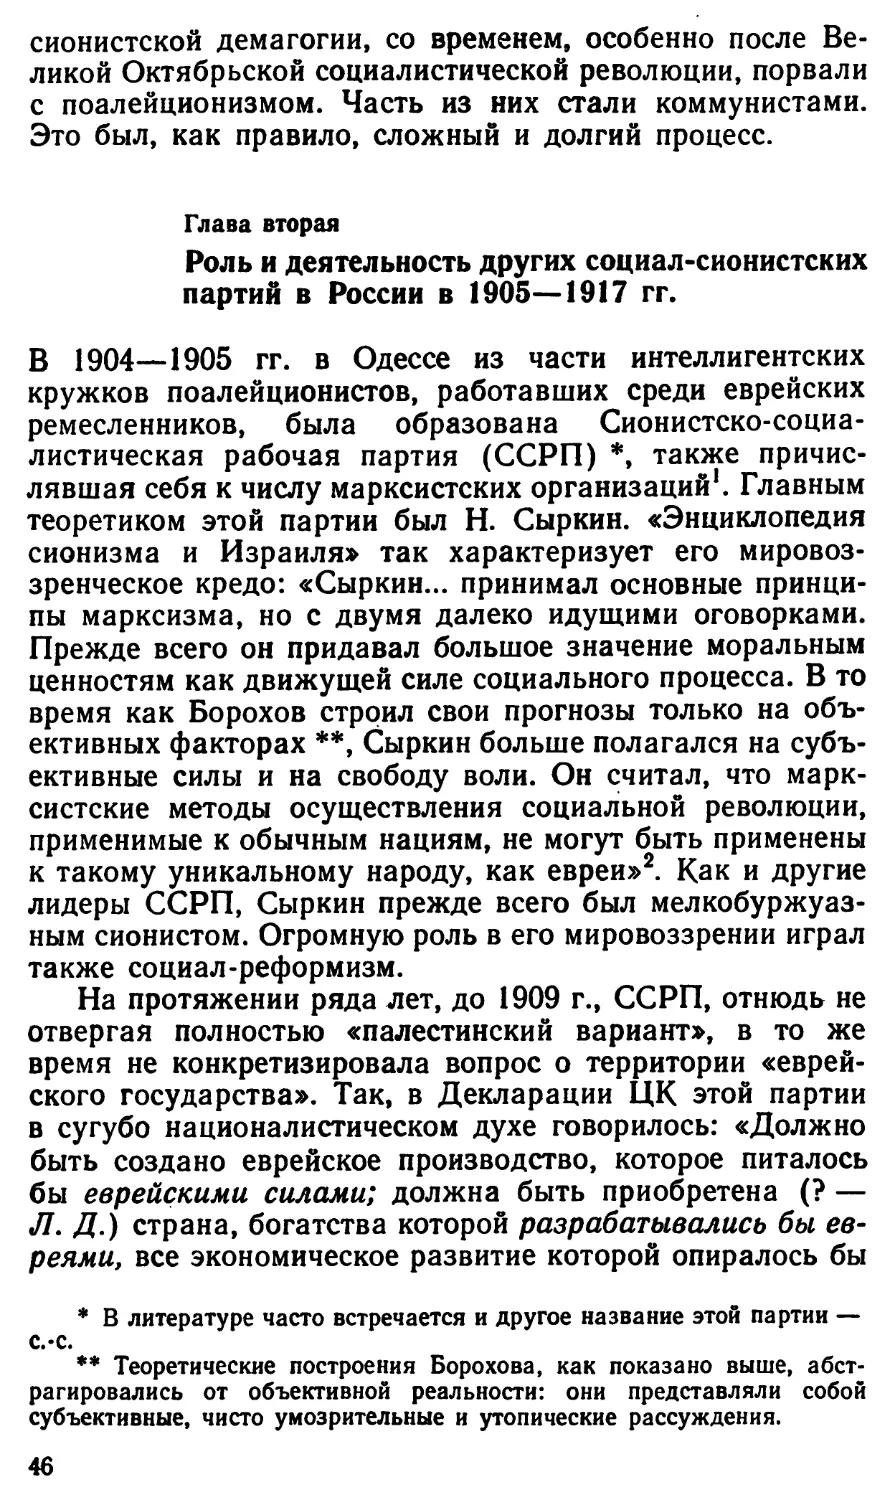 Глава  вторая. Роль  и  деятельность  других  социал-сионистских партий  в  России  в  1905—1917  гг